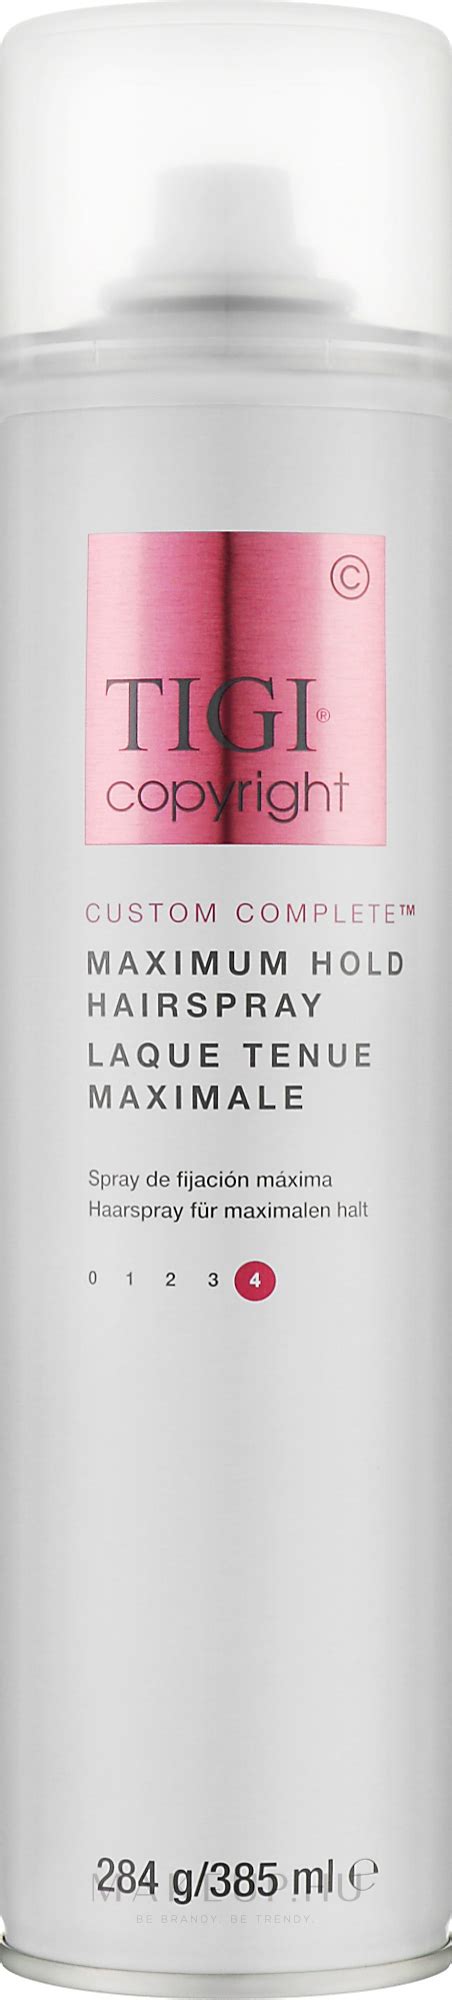 Tigi Copyright Maximum Hold Hairspray Szuper erős tartású hajlakk